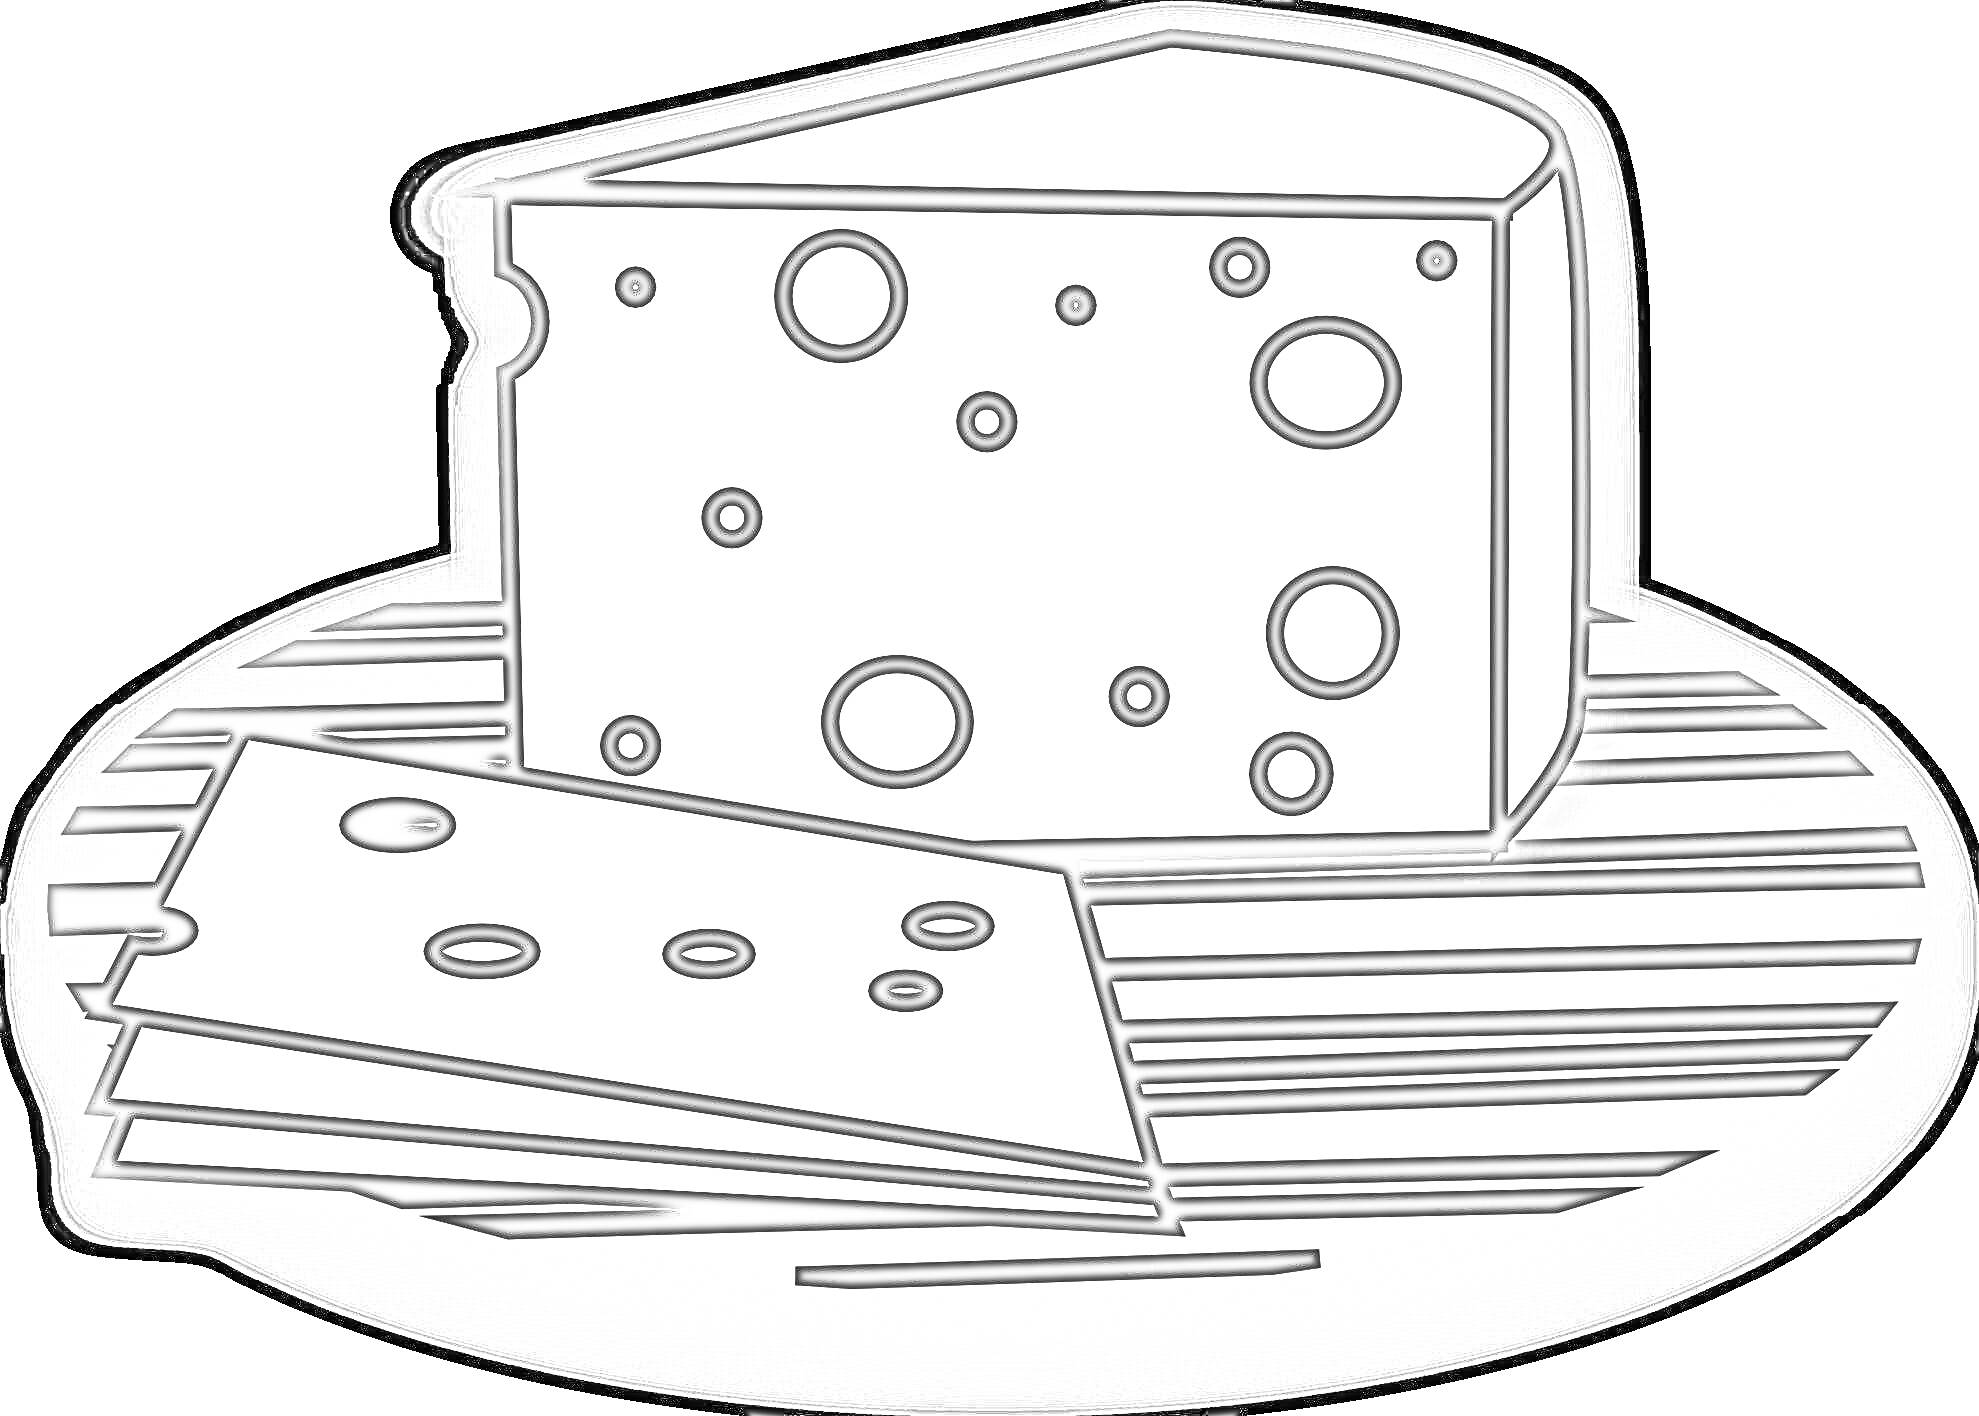 Кусок сыра и два ломтика на деревянной поверхности